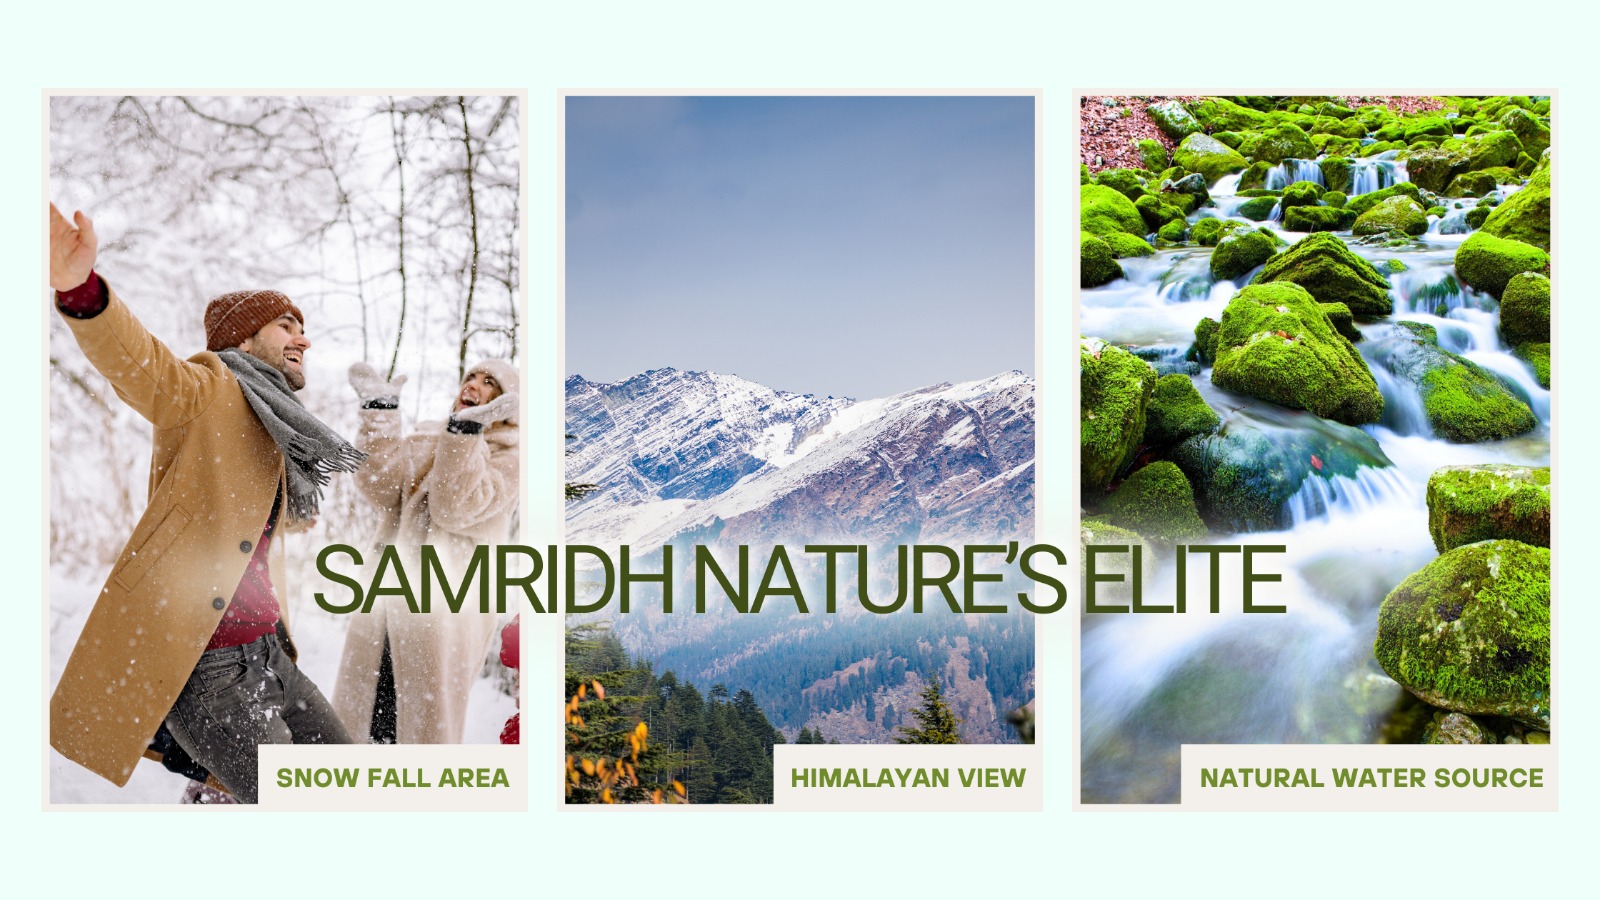 Samridh Nature's Elite